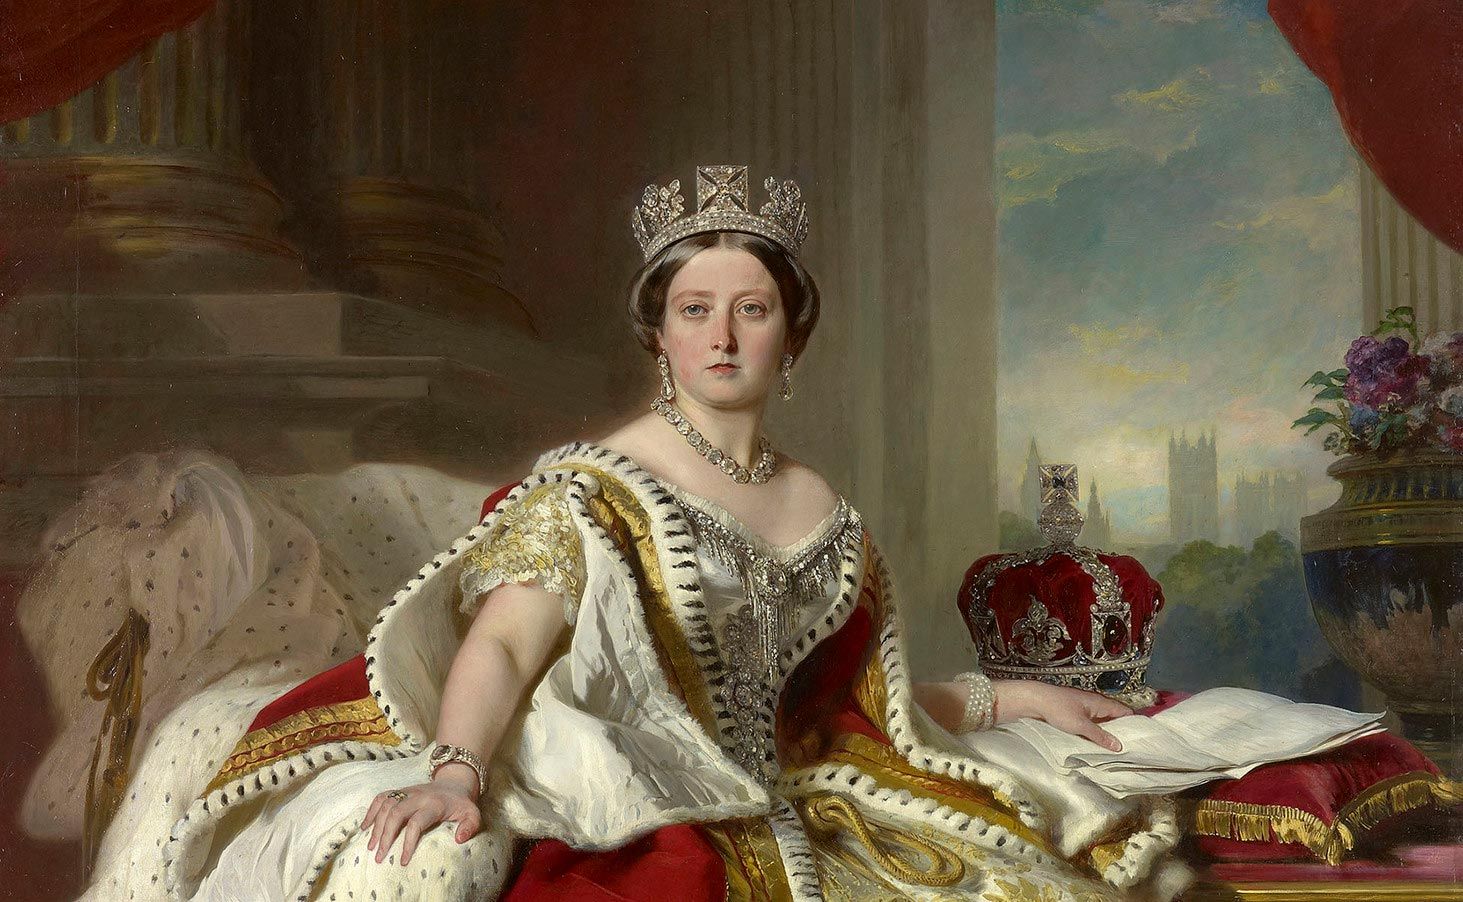 Portrait of Queen Victoria by Franz Xaver Winterhalter, 1859.